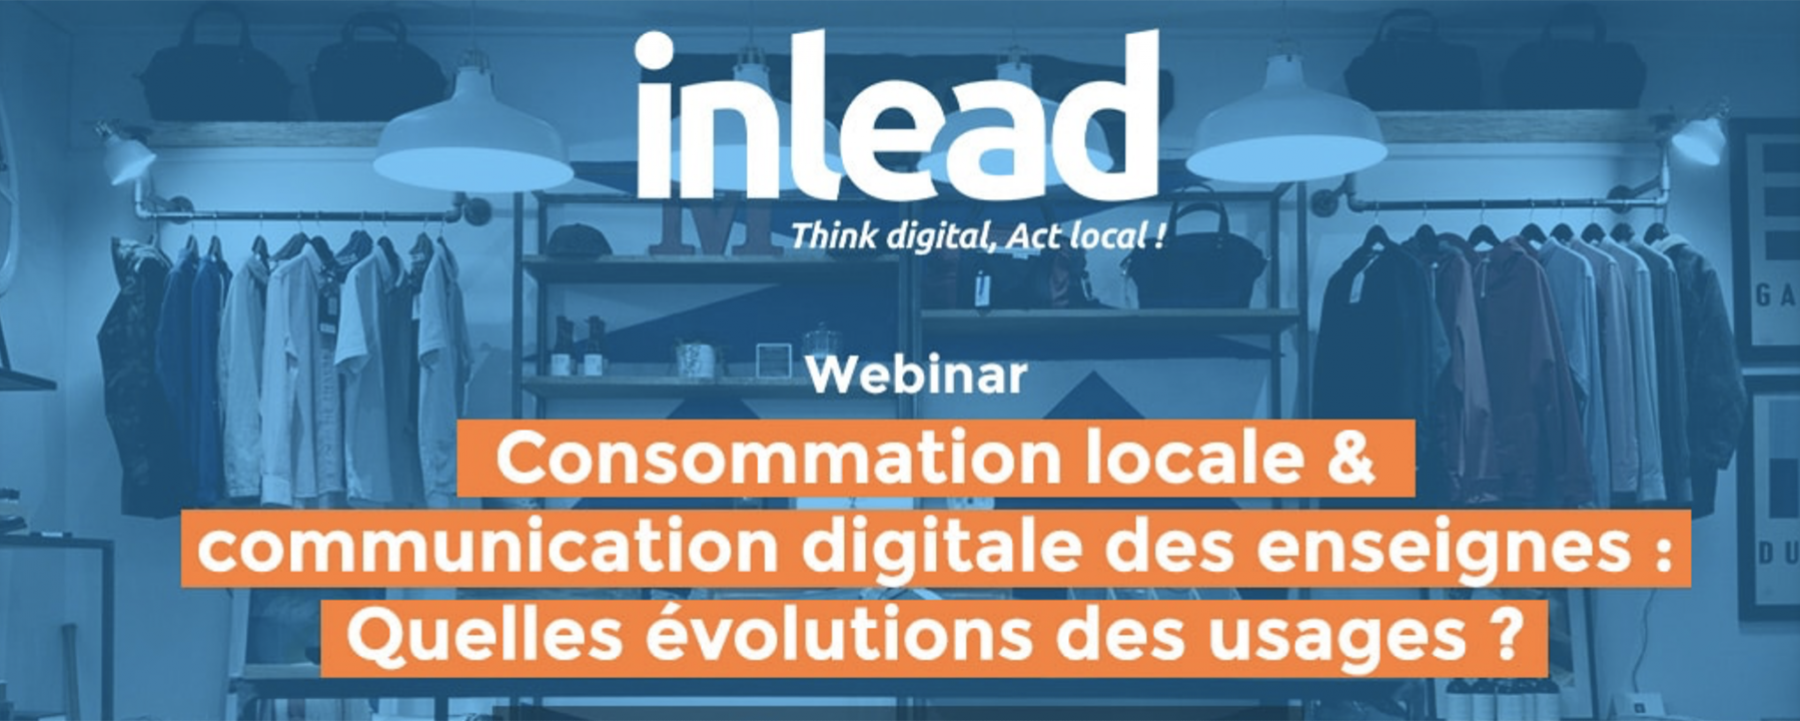 Webinar Consommation locale et communication digitale : Quelles évolutions ?, organisé par Inlead, le 25 juin